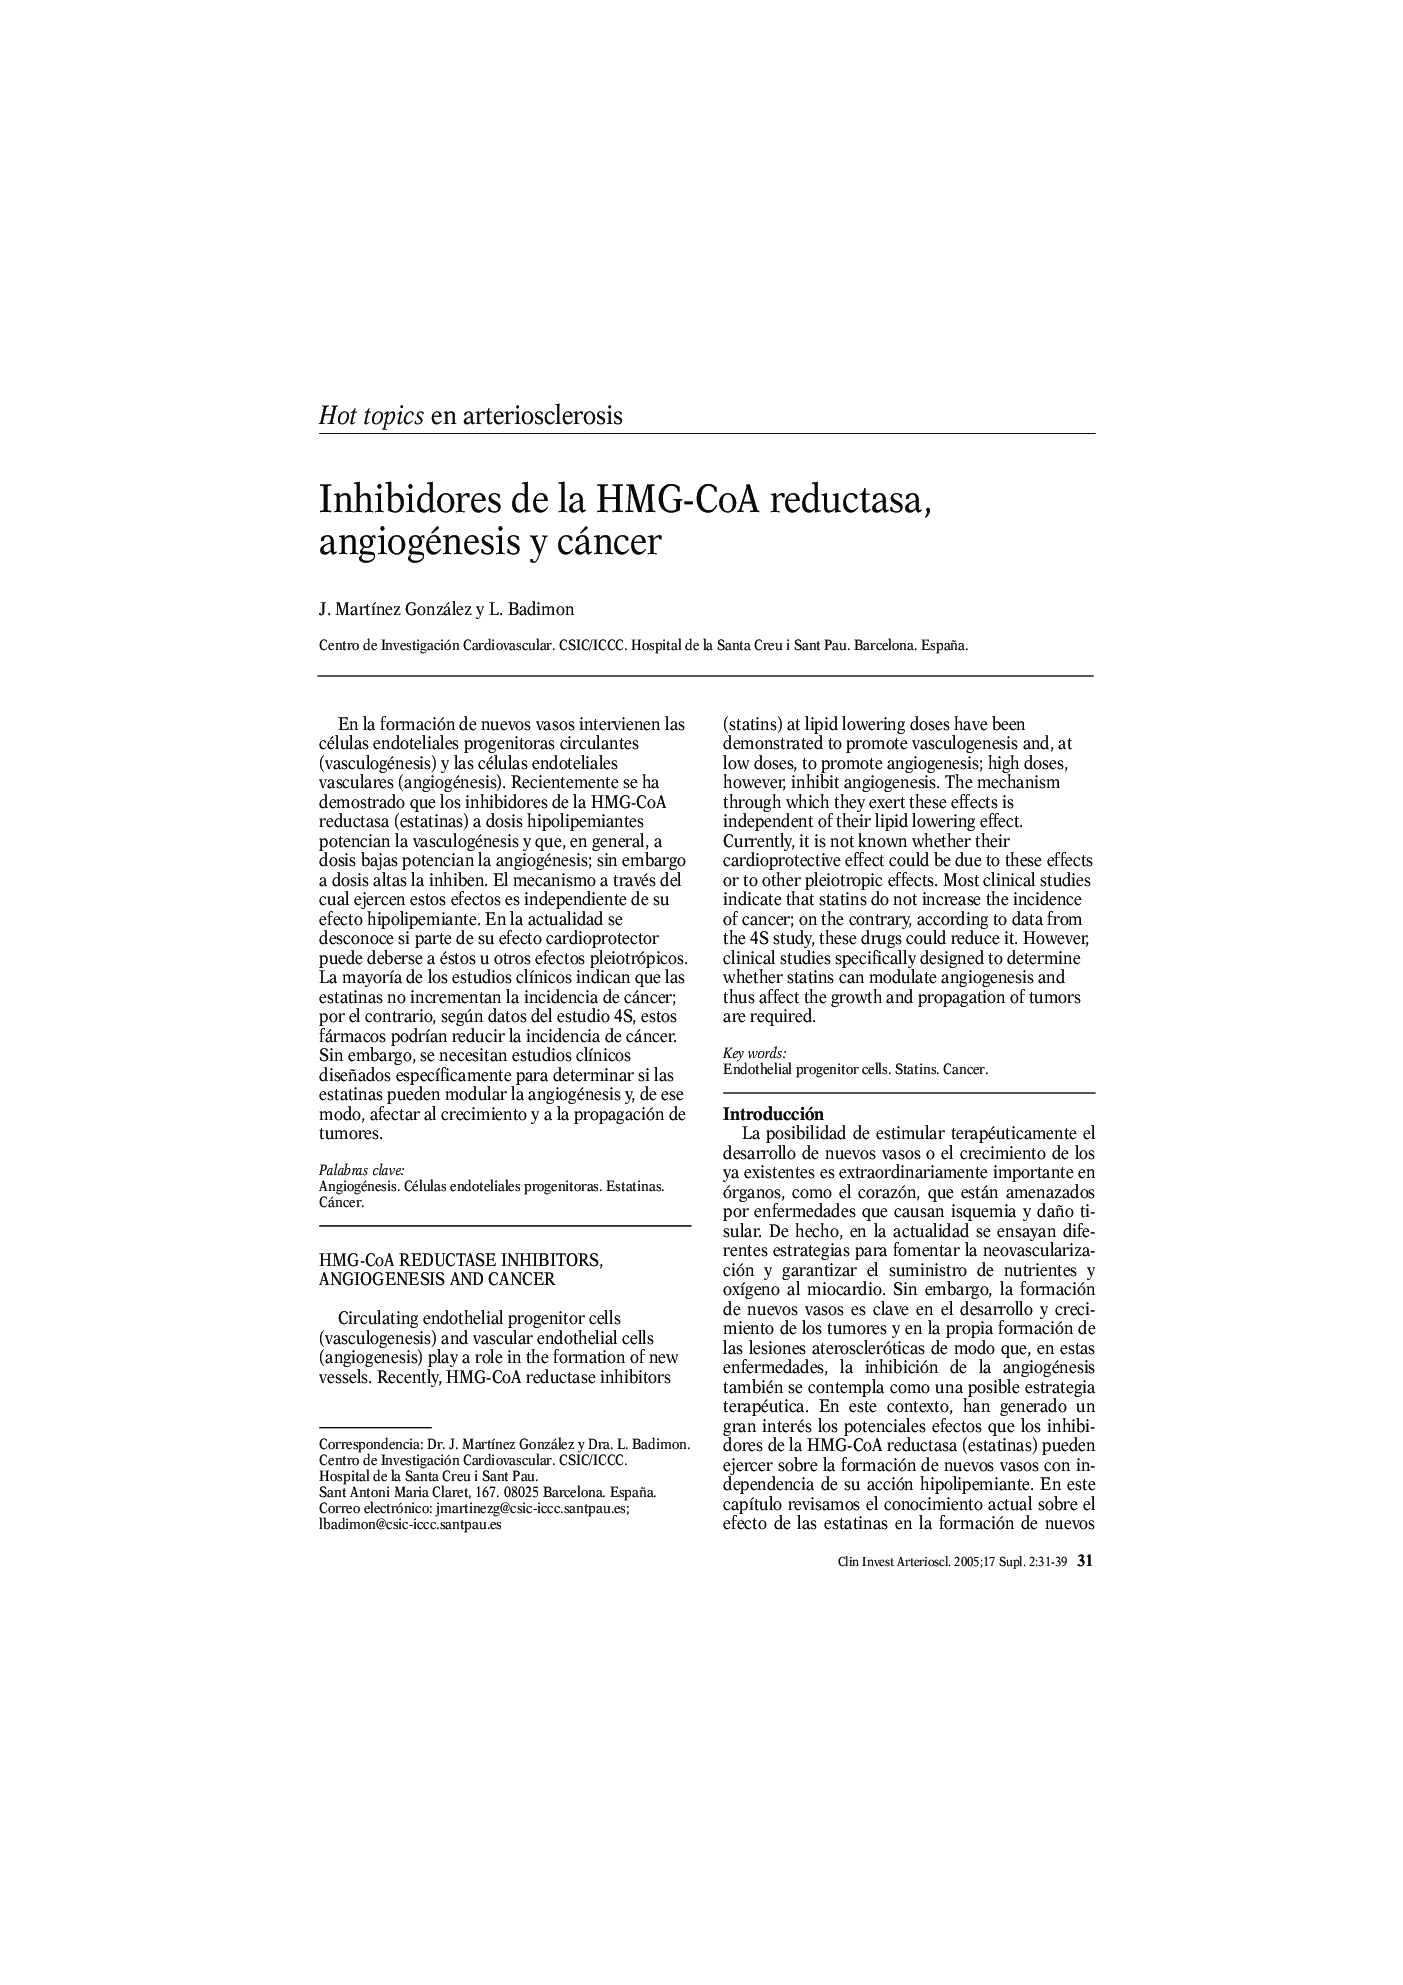 Inhibidores de la HMG-CoA reductasa, angiogénesis y cáncer